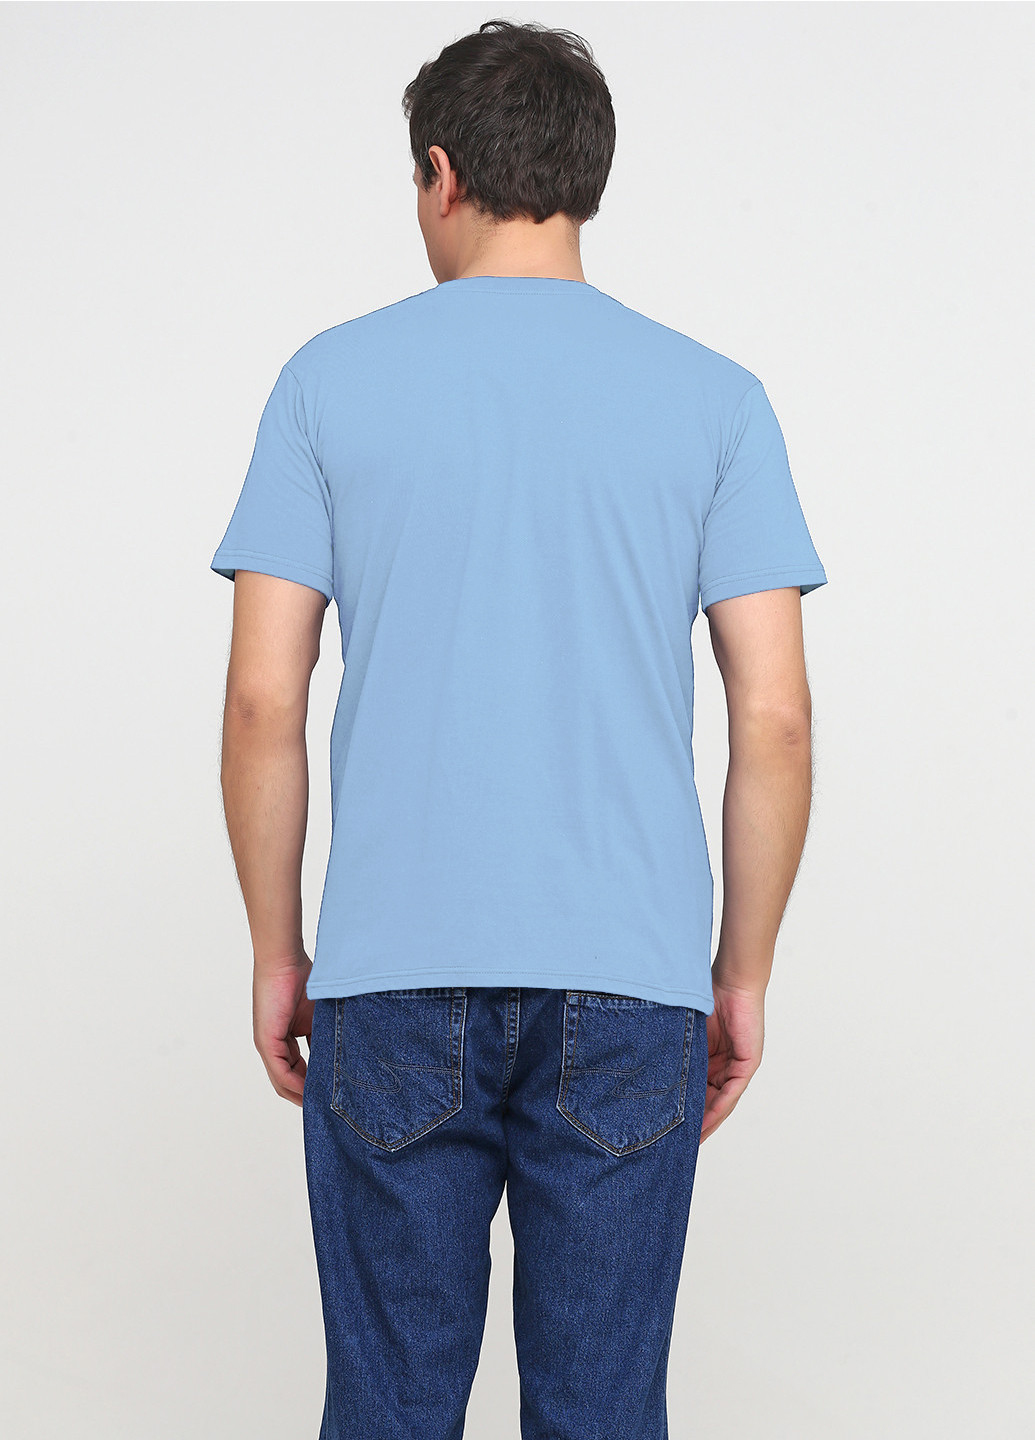 Голубая футболка мужская голубая с принтом козак с коротким рукавом Malta